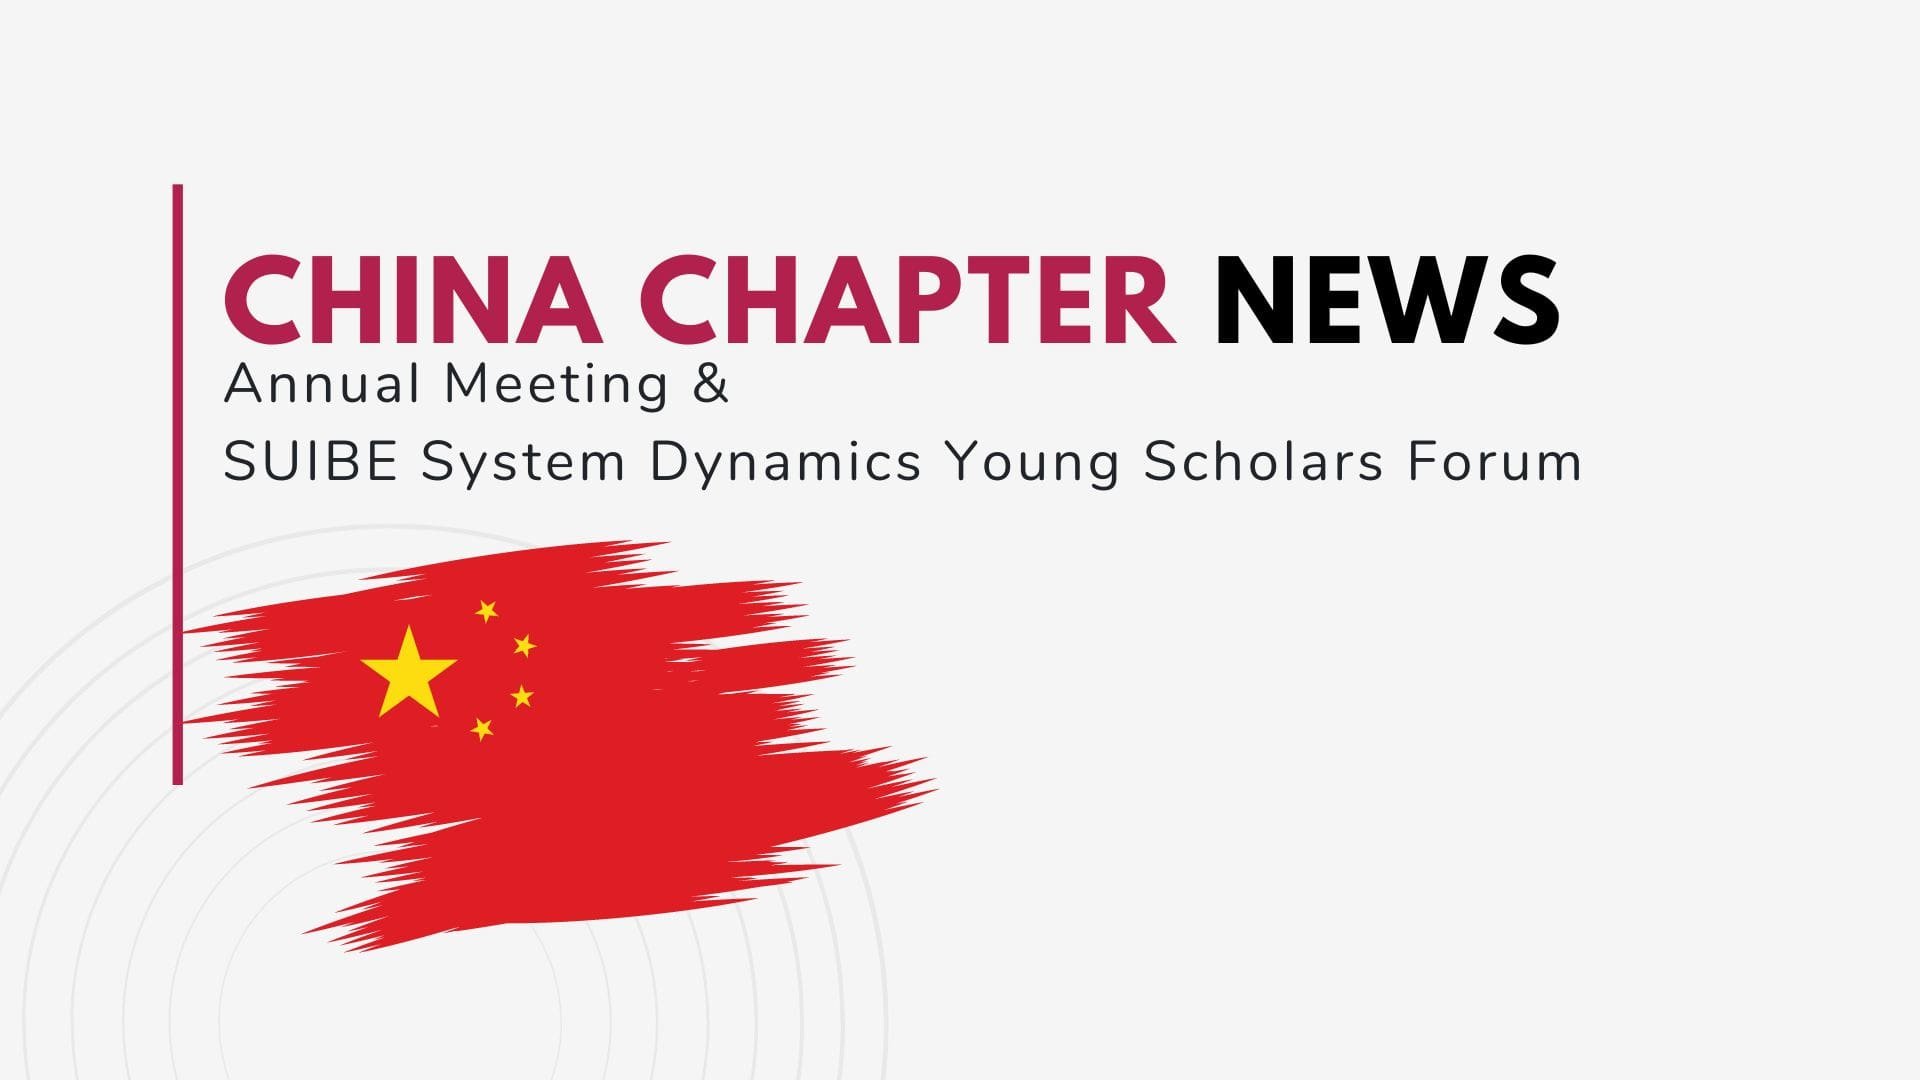 China Chapter News